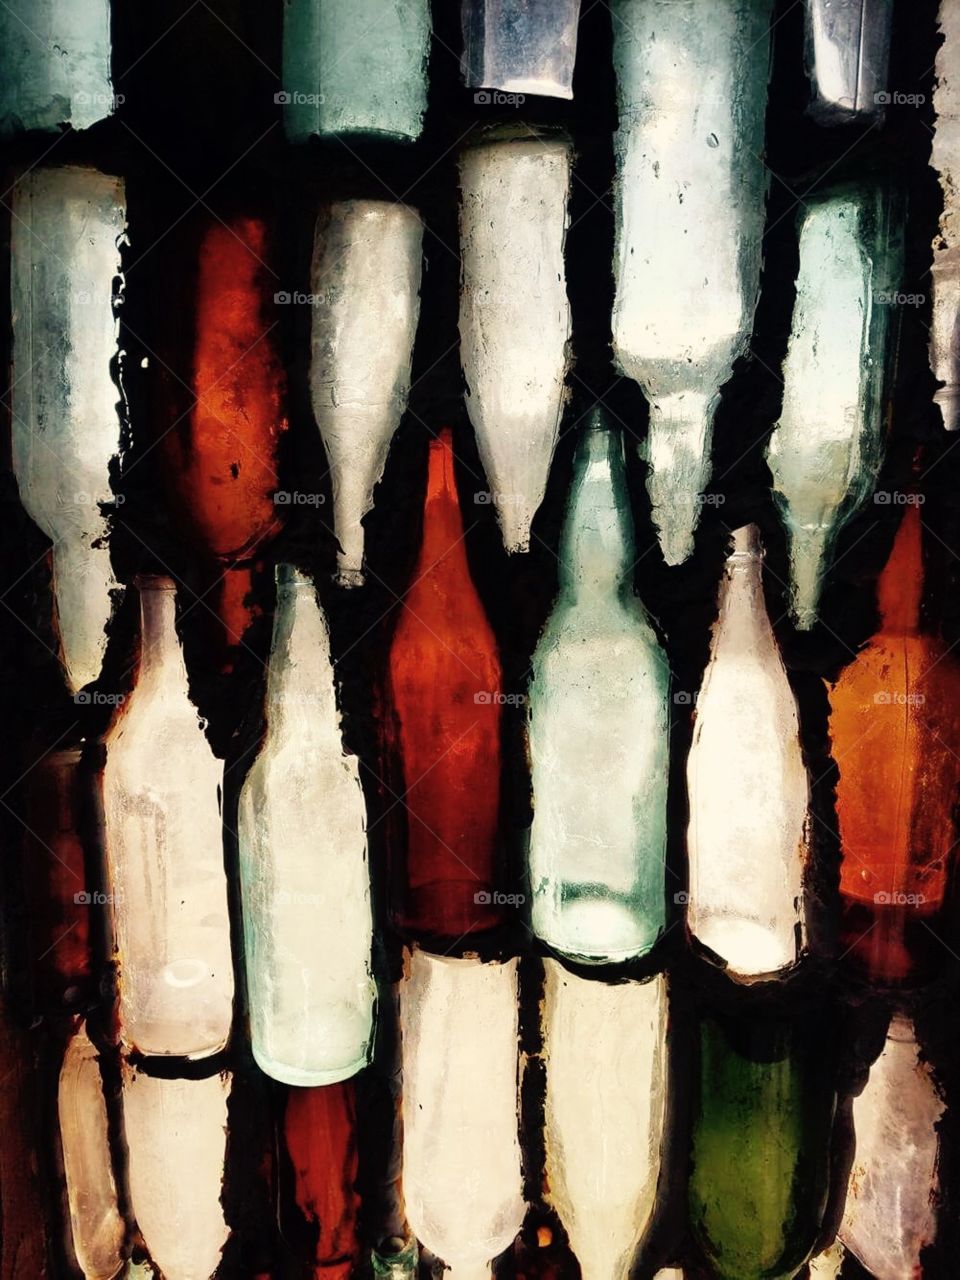 Glass bottle window